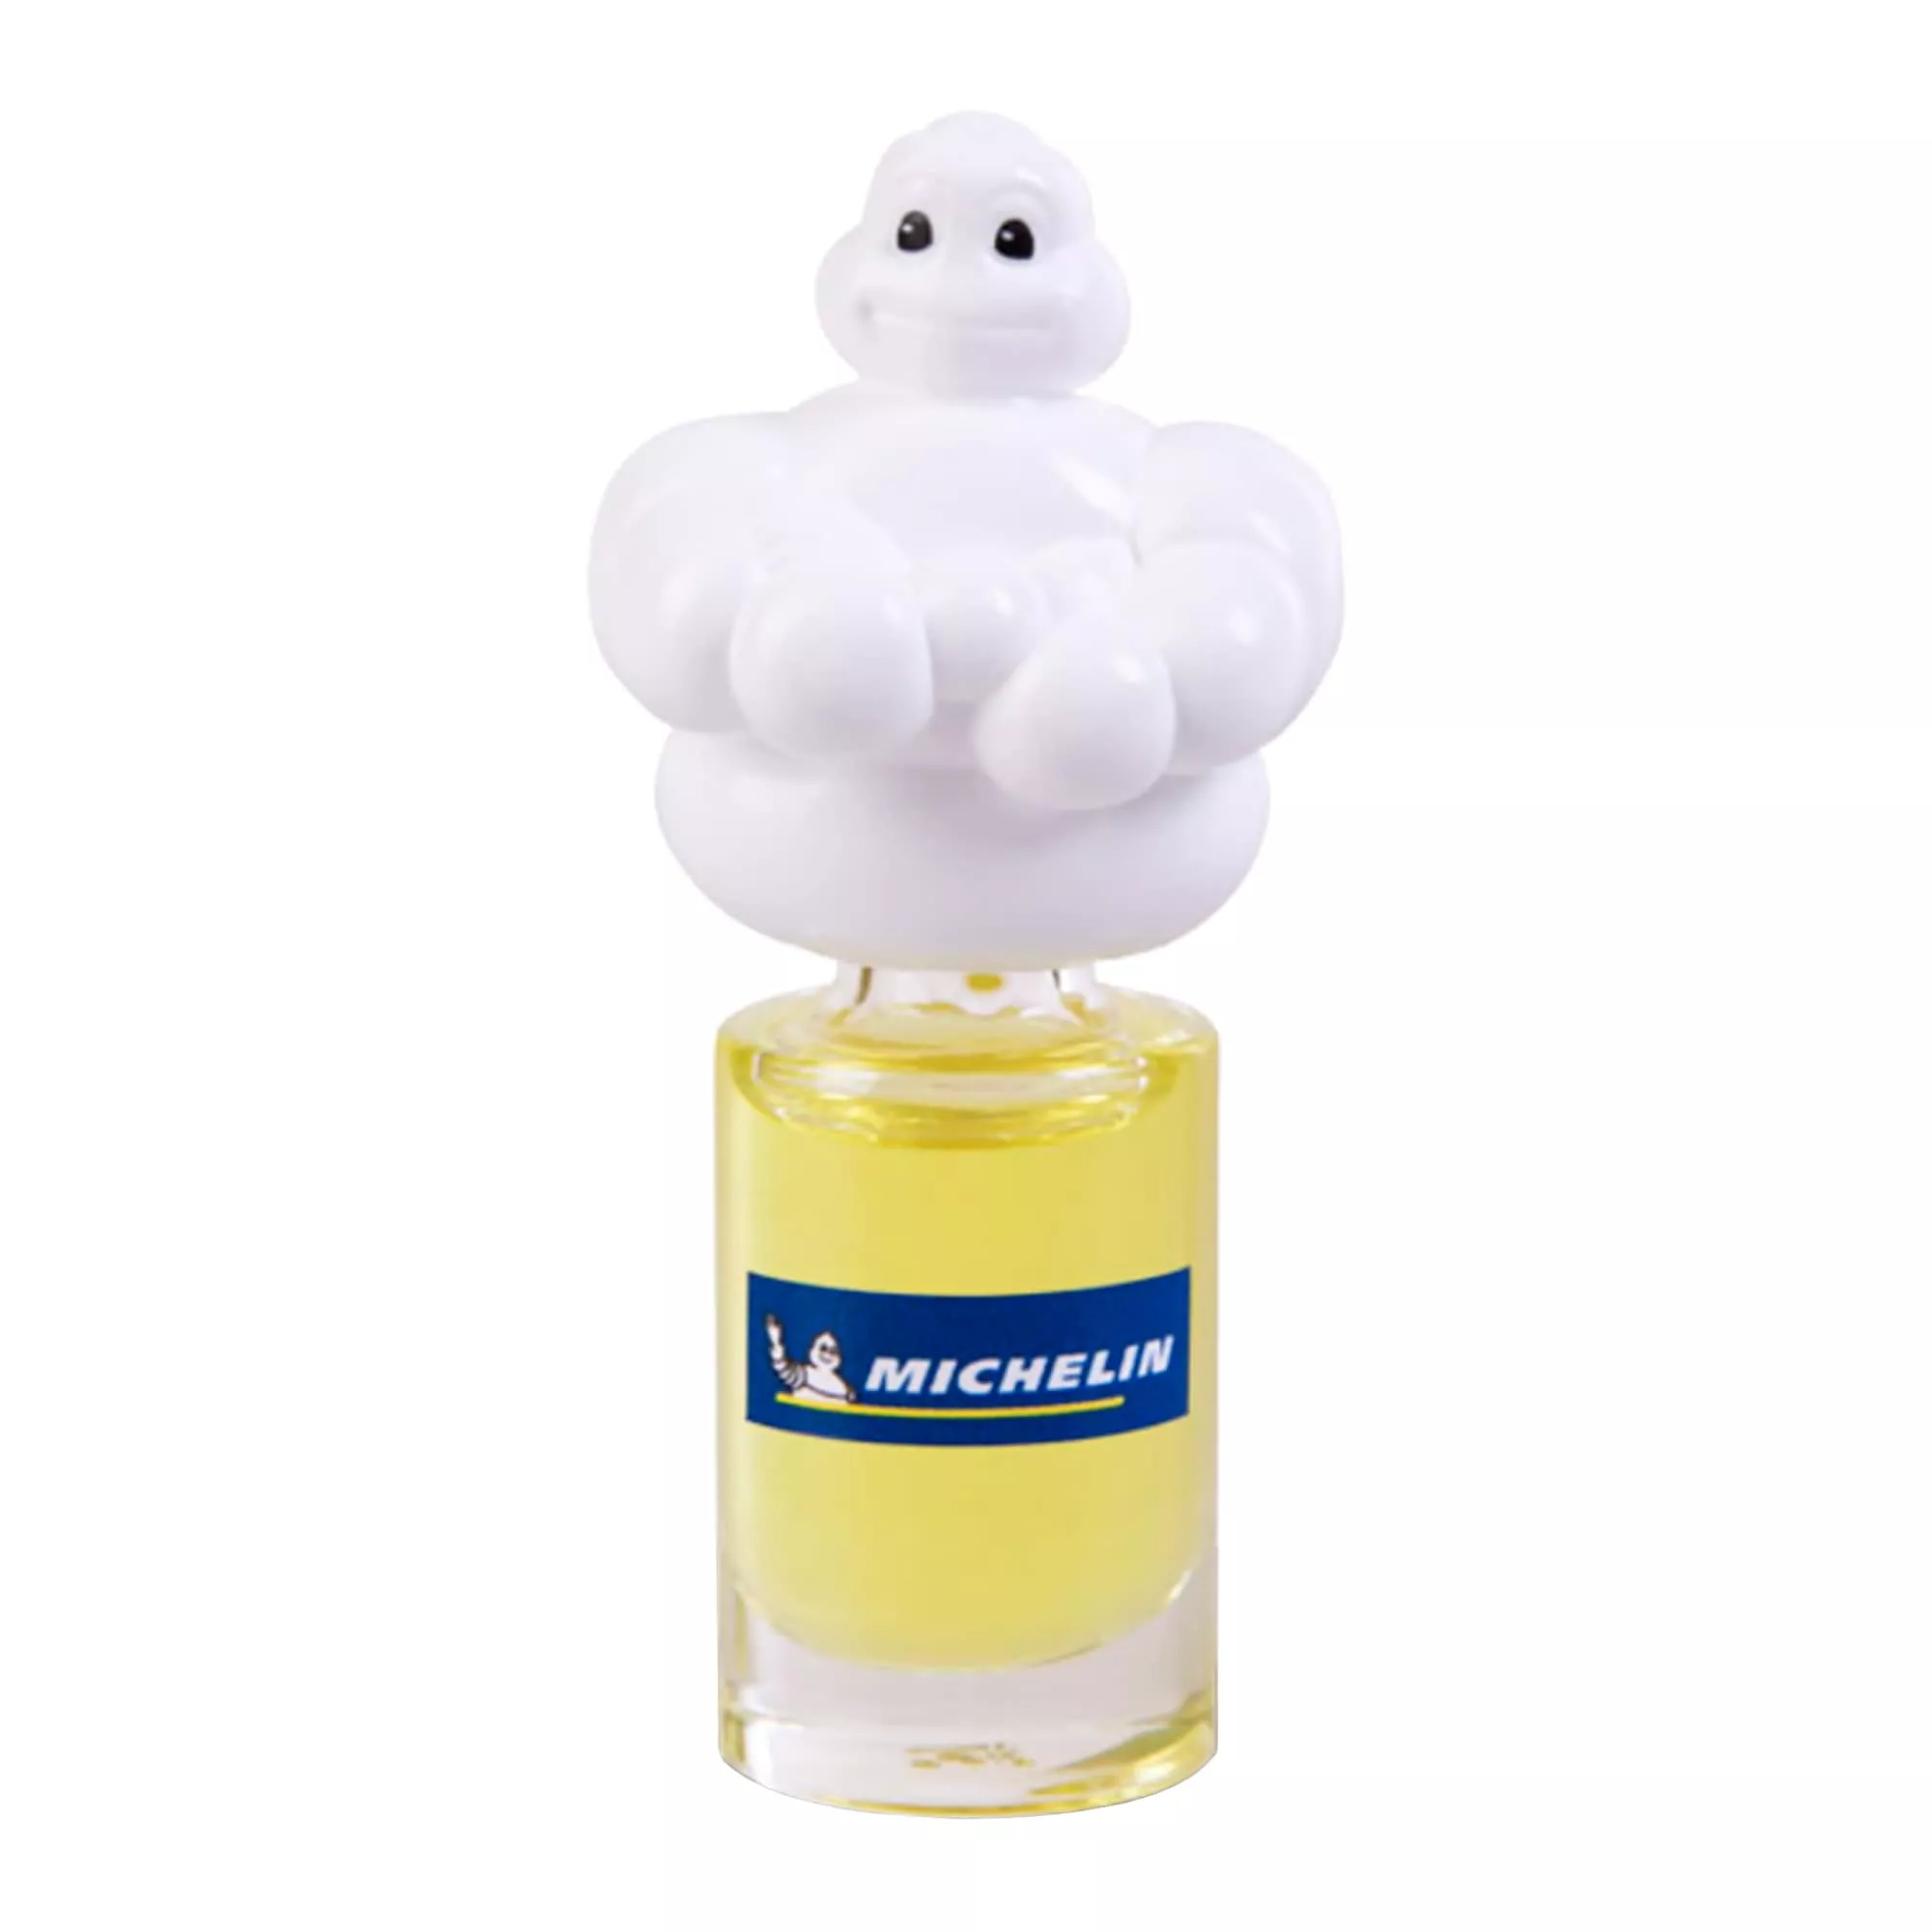 Ароматизатор Michelin Спорт мини-бутылка 5мл 031821 (W31821)